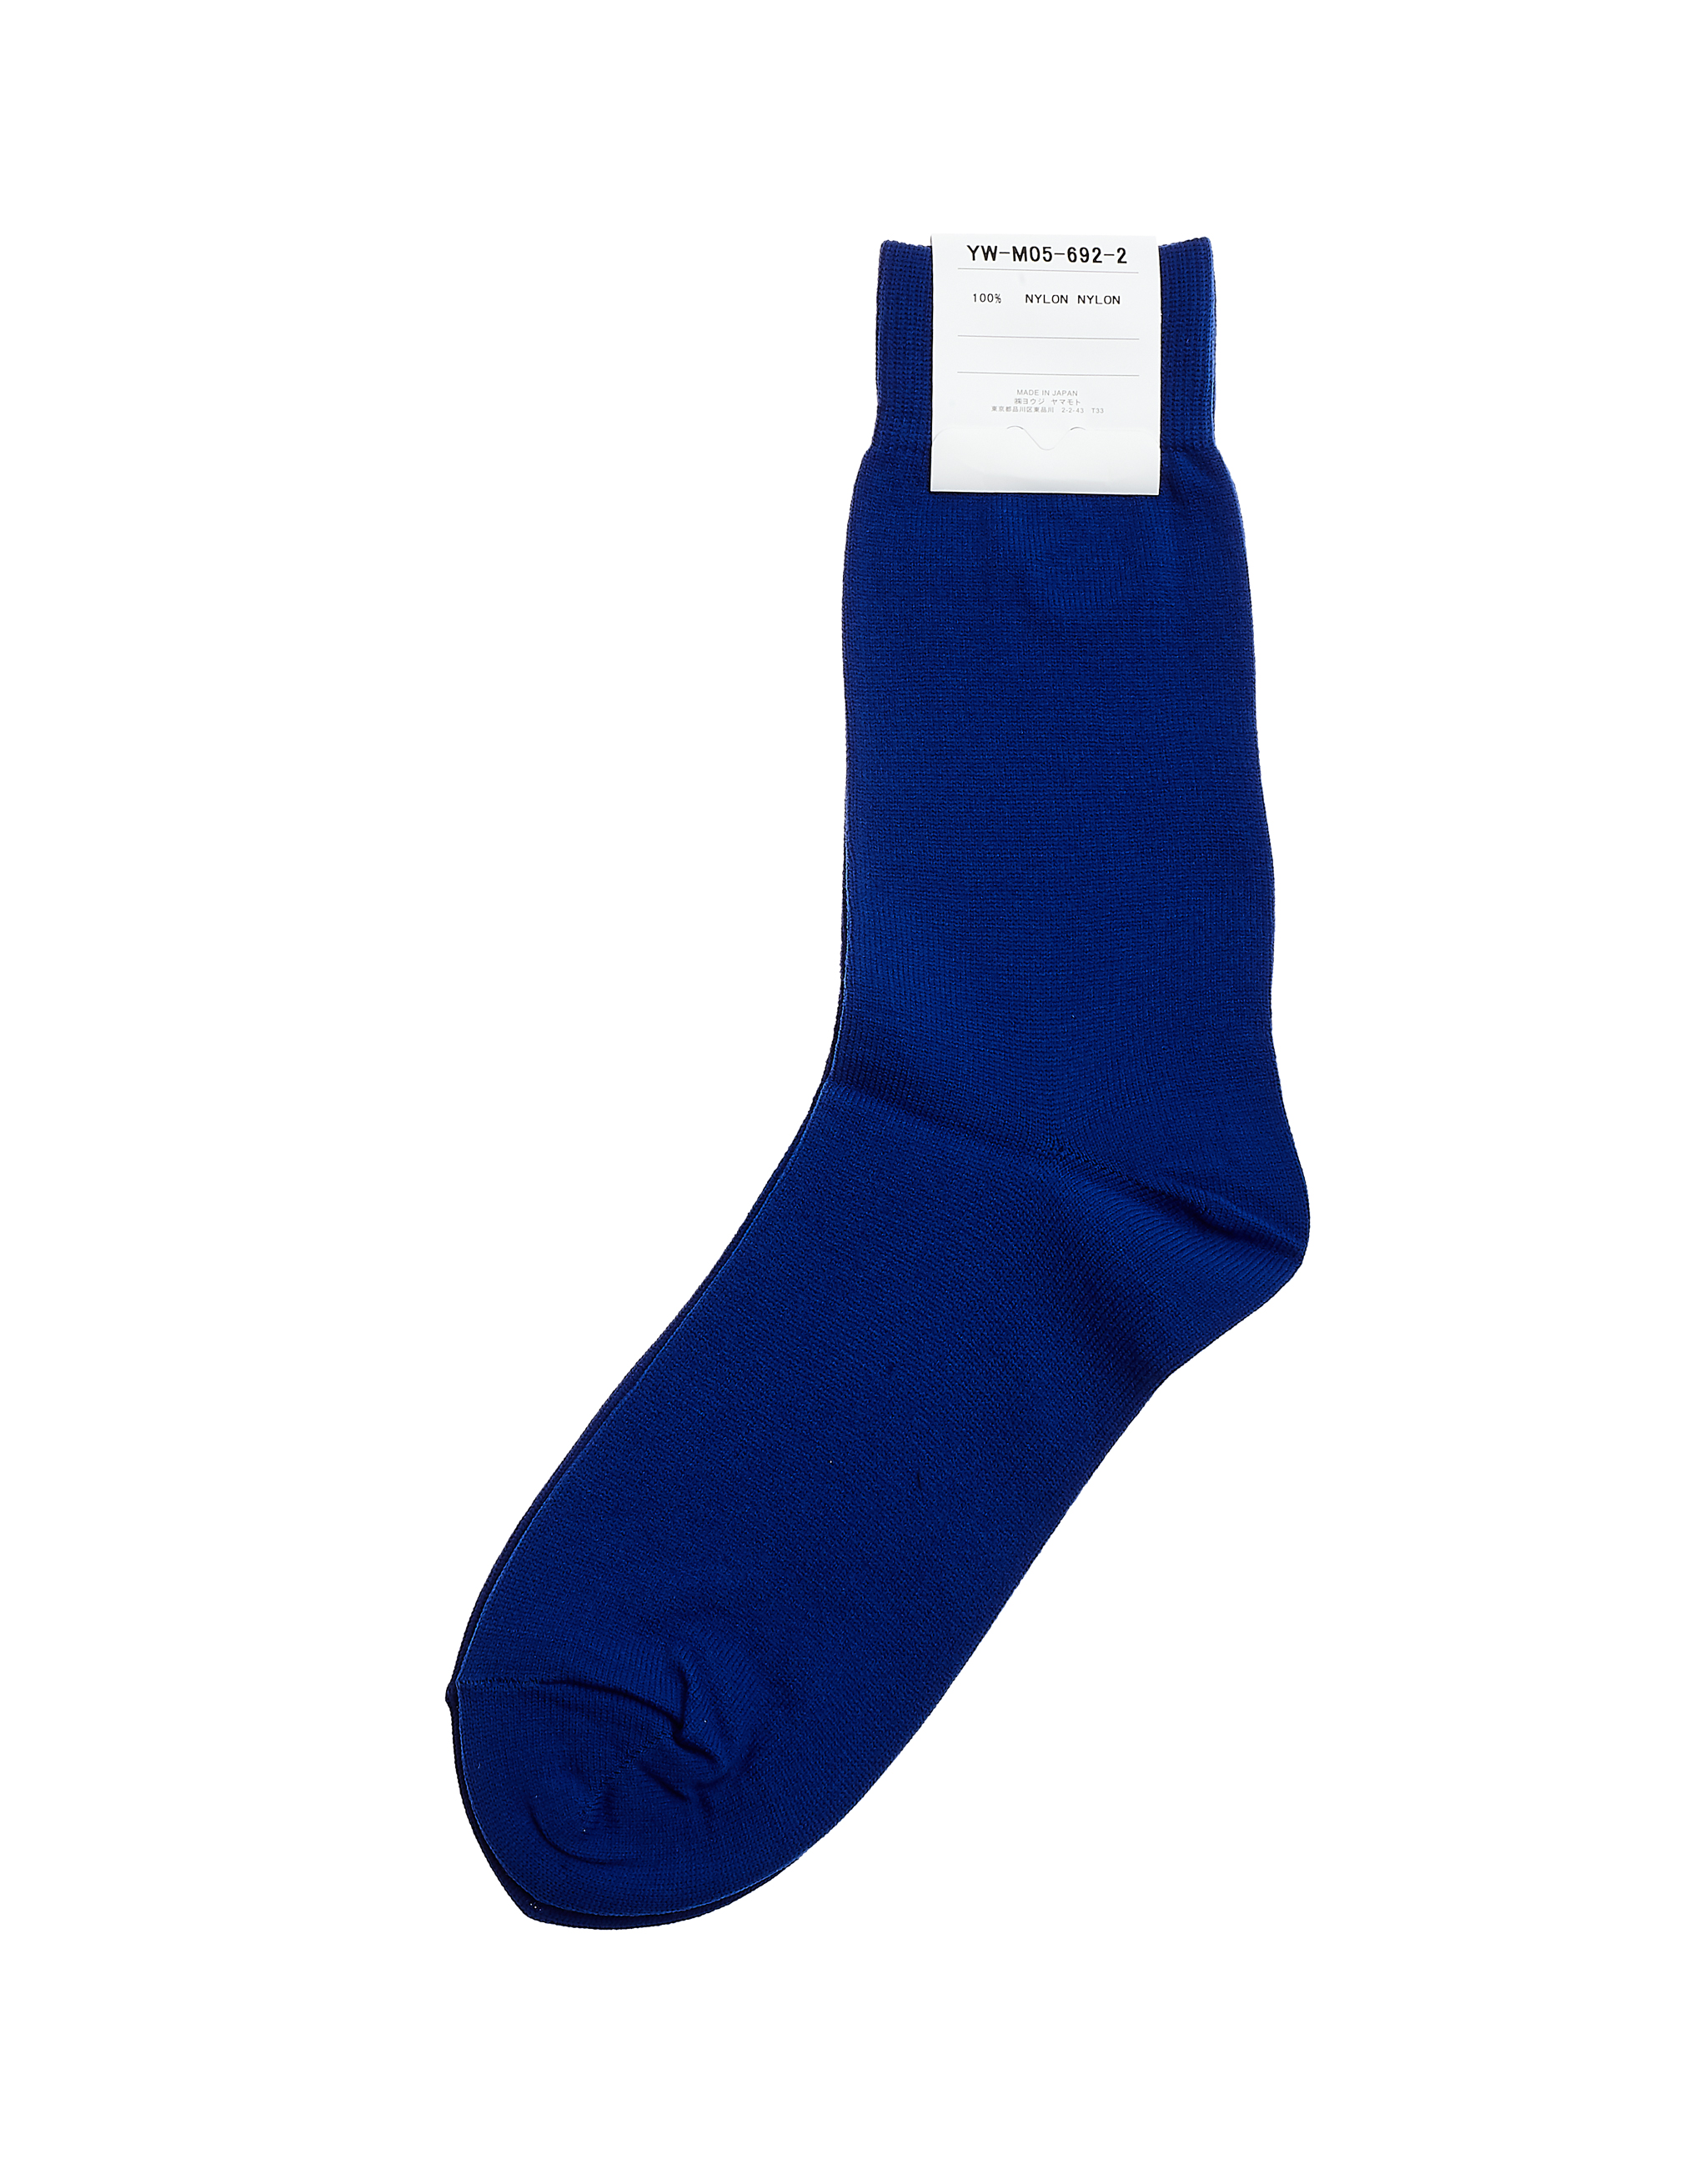 Синие носки - Ys YW-M05-692-2 Фото 2